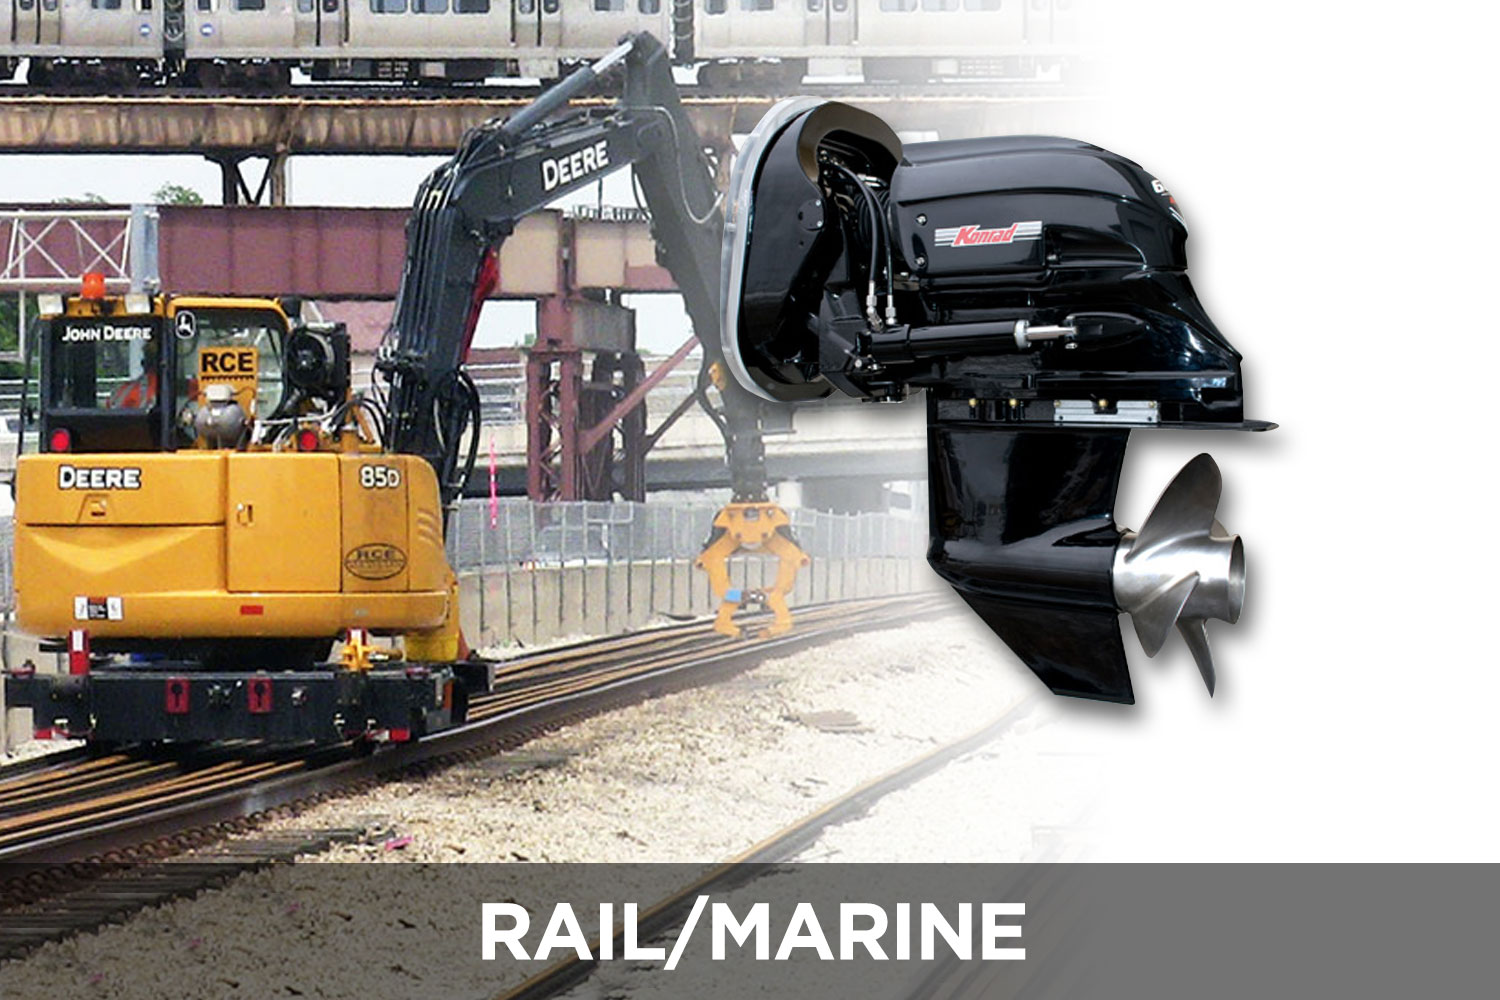 Rail/Marine